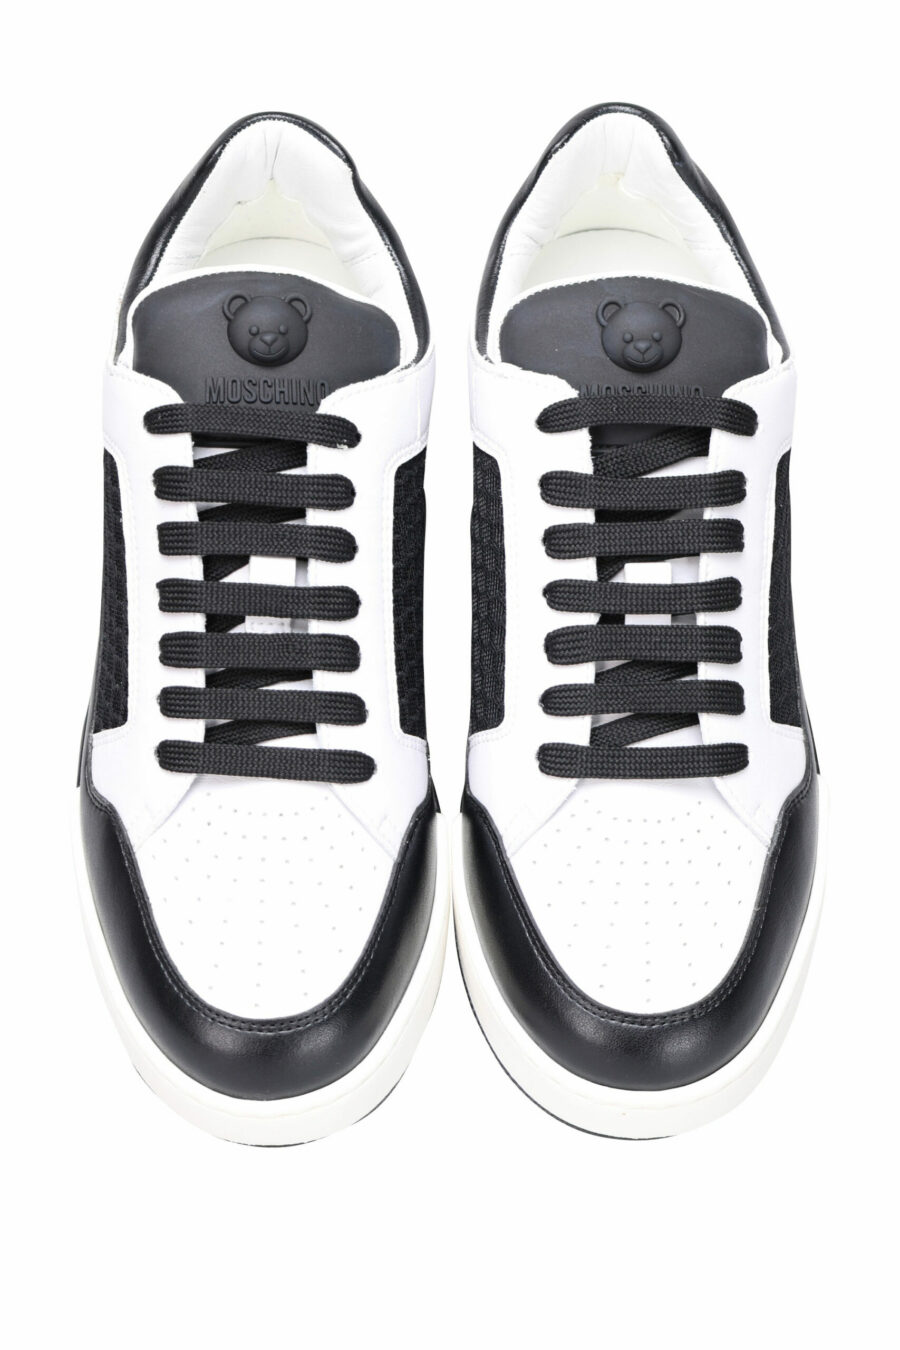 Zapatillas bicolor negras y blanco "kevin40" con minilogo - 8054388024457 4 scaled